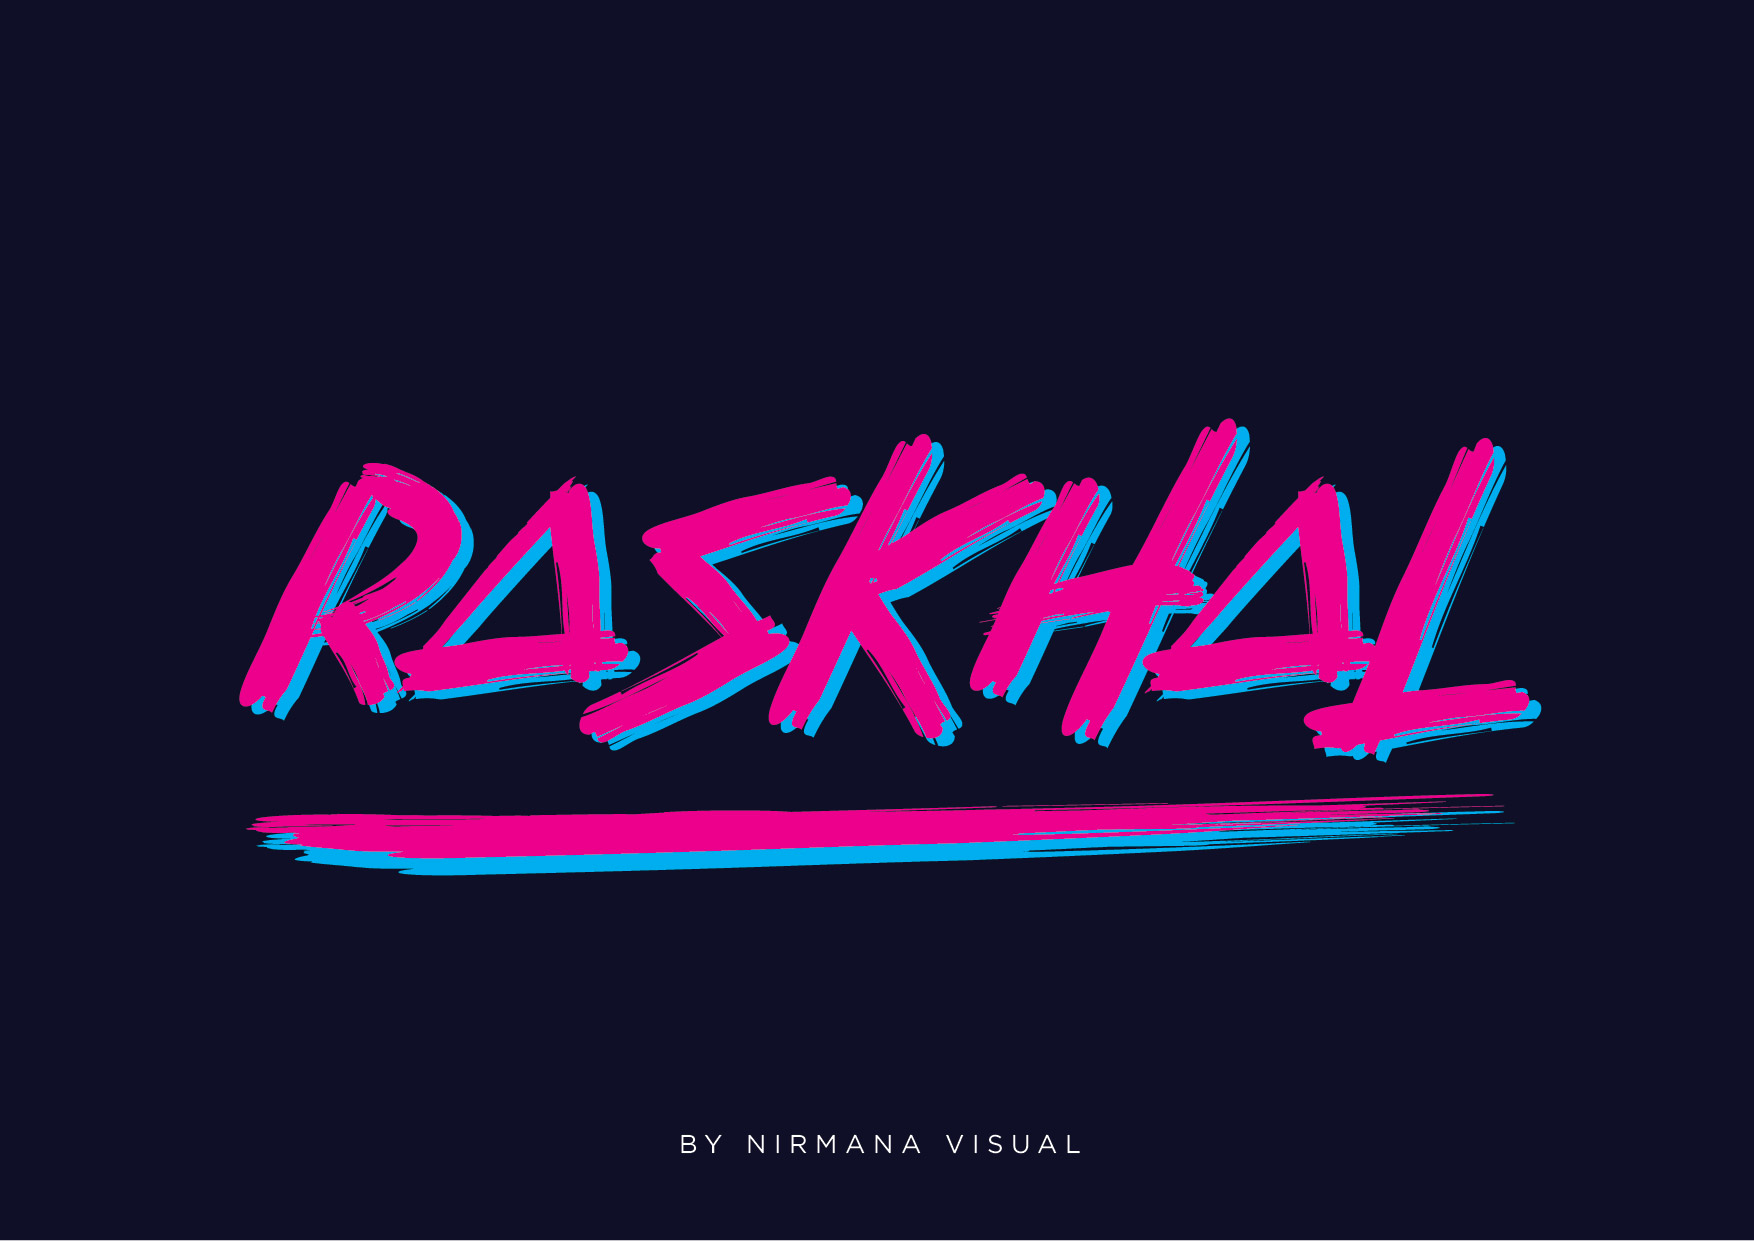 Raskhal